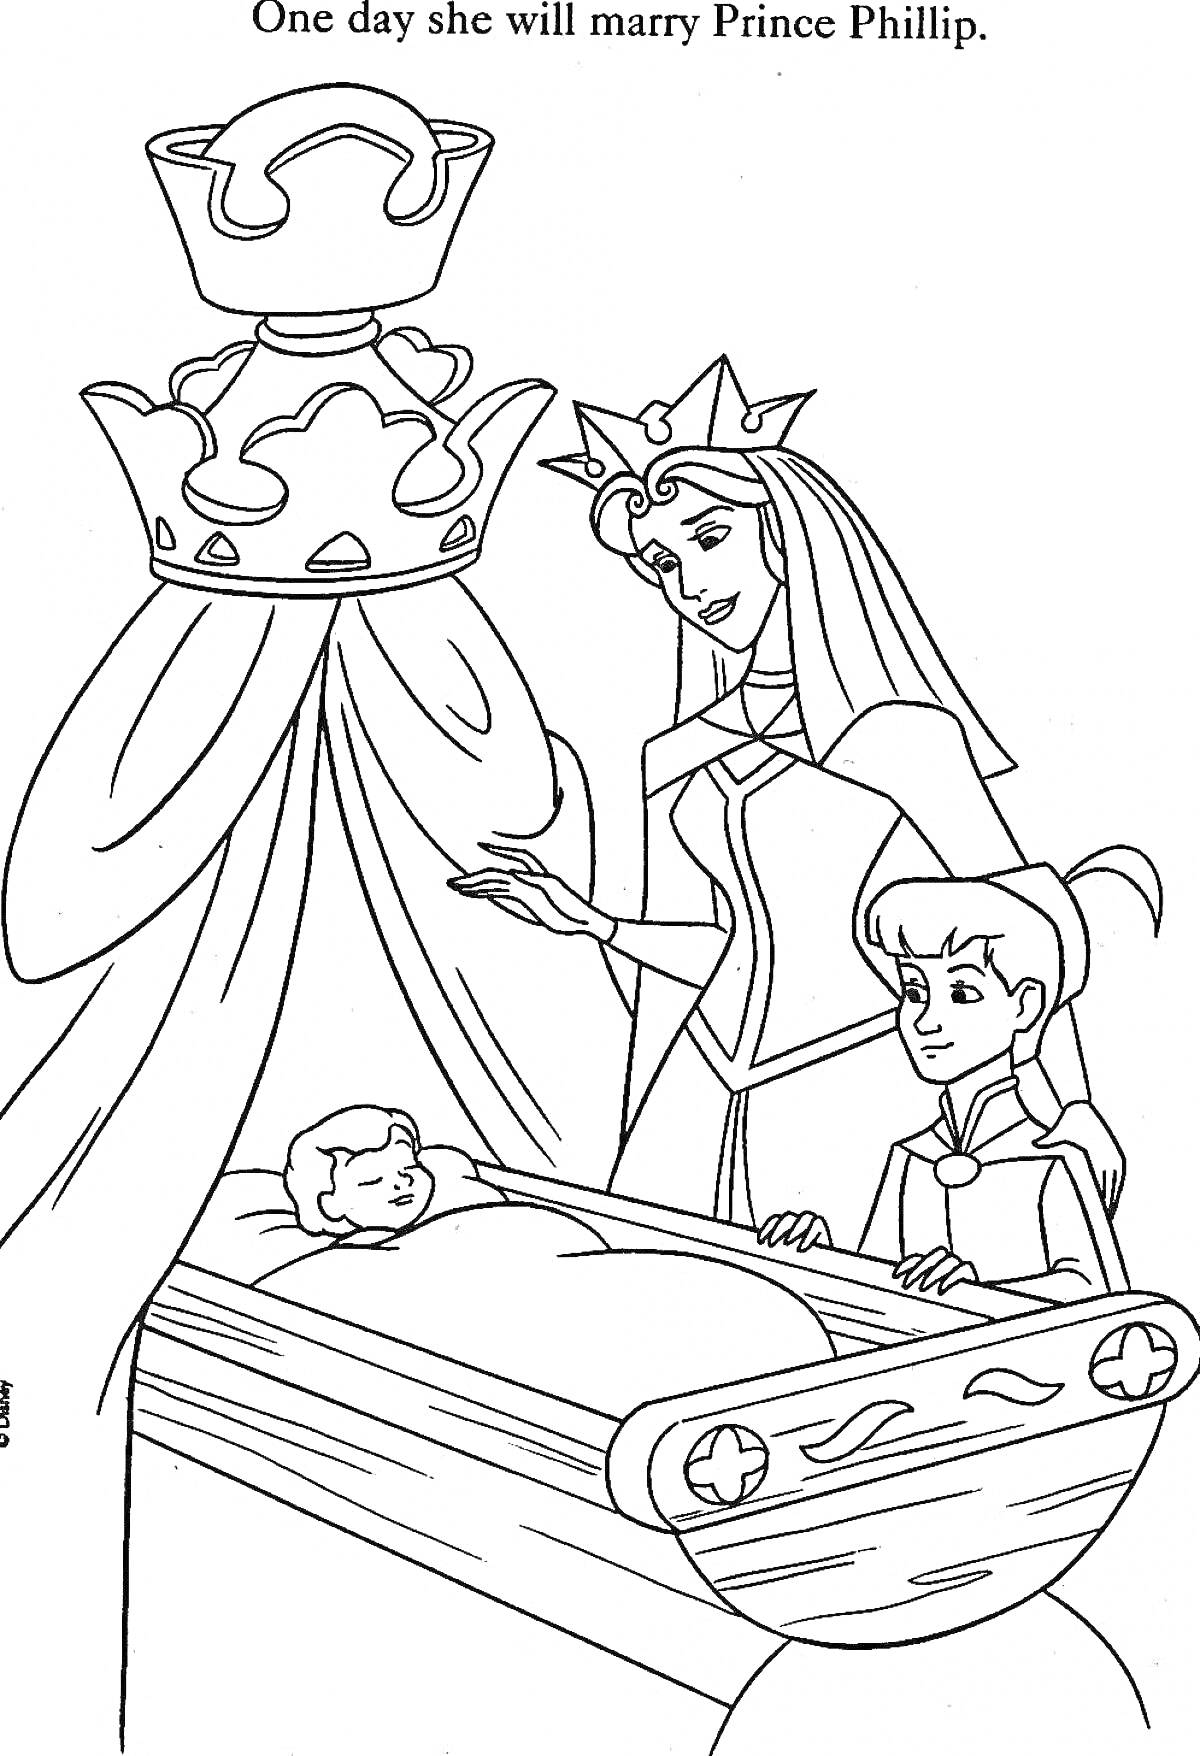 На раскраске изображено: Королева, Принц, Младенец, Корона, Колыбель, Шторы, Сказочные персонажи, Королевская семья, Волшебство, Свадьба